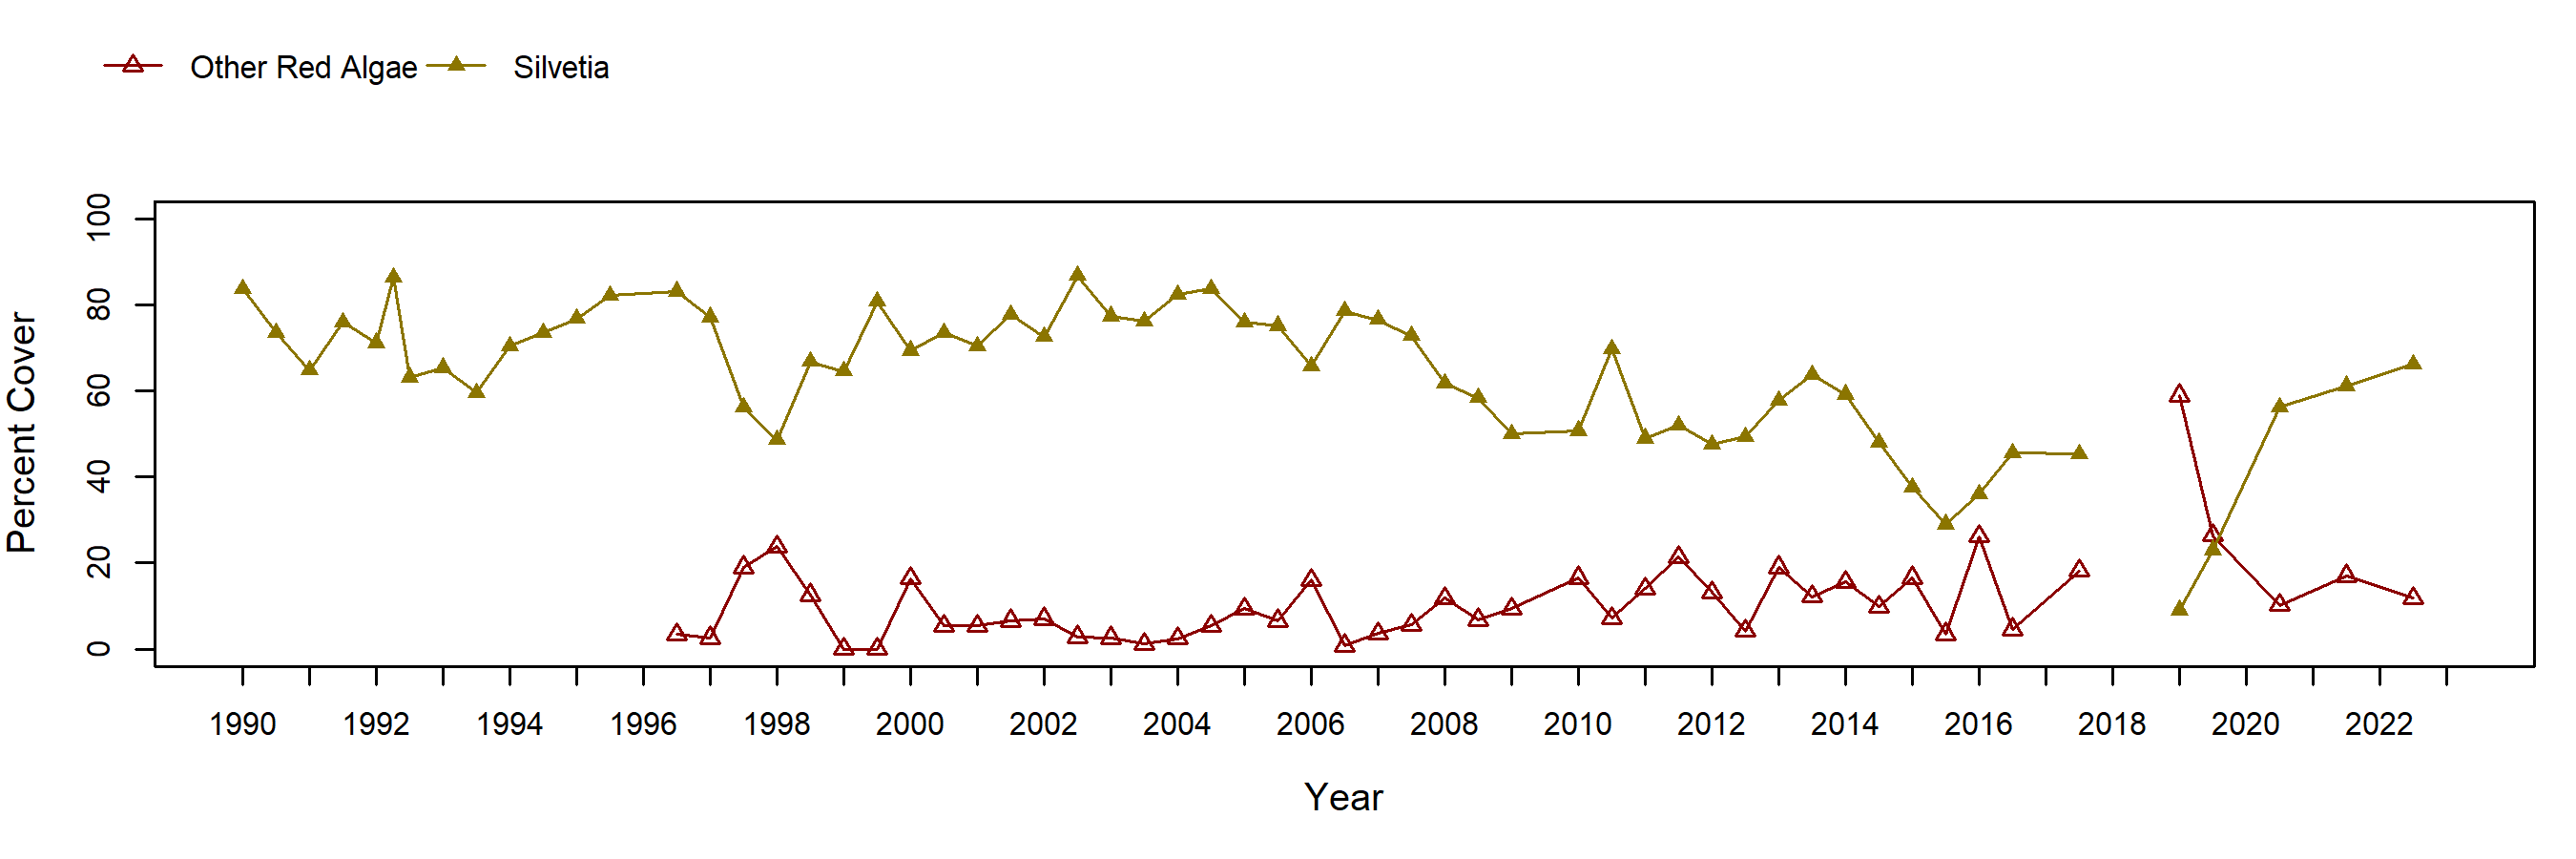 Cabrillo III Silvetia trend plot